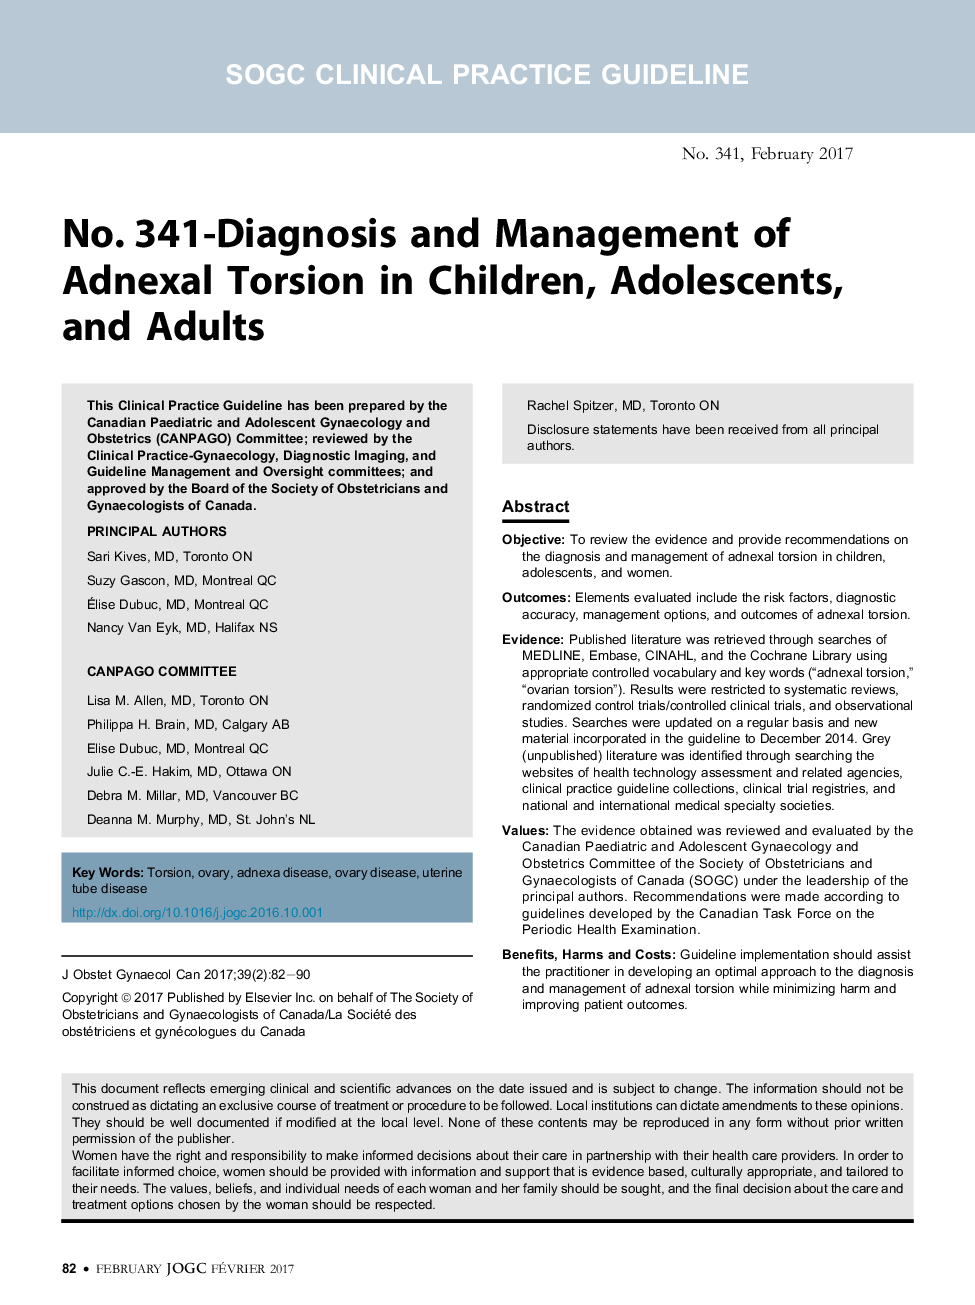 شماره 341- تشخیص و مدیریت پیچشی آدنکسال در کودکان، نوجوانان و بزرگسالان 